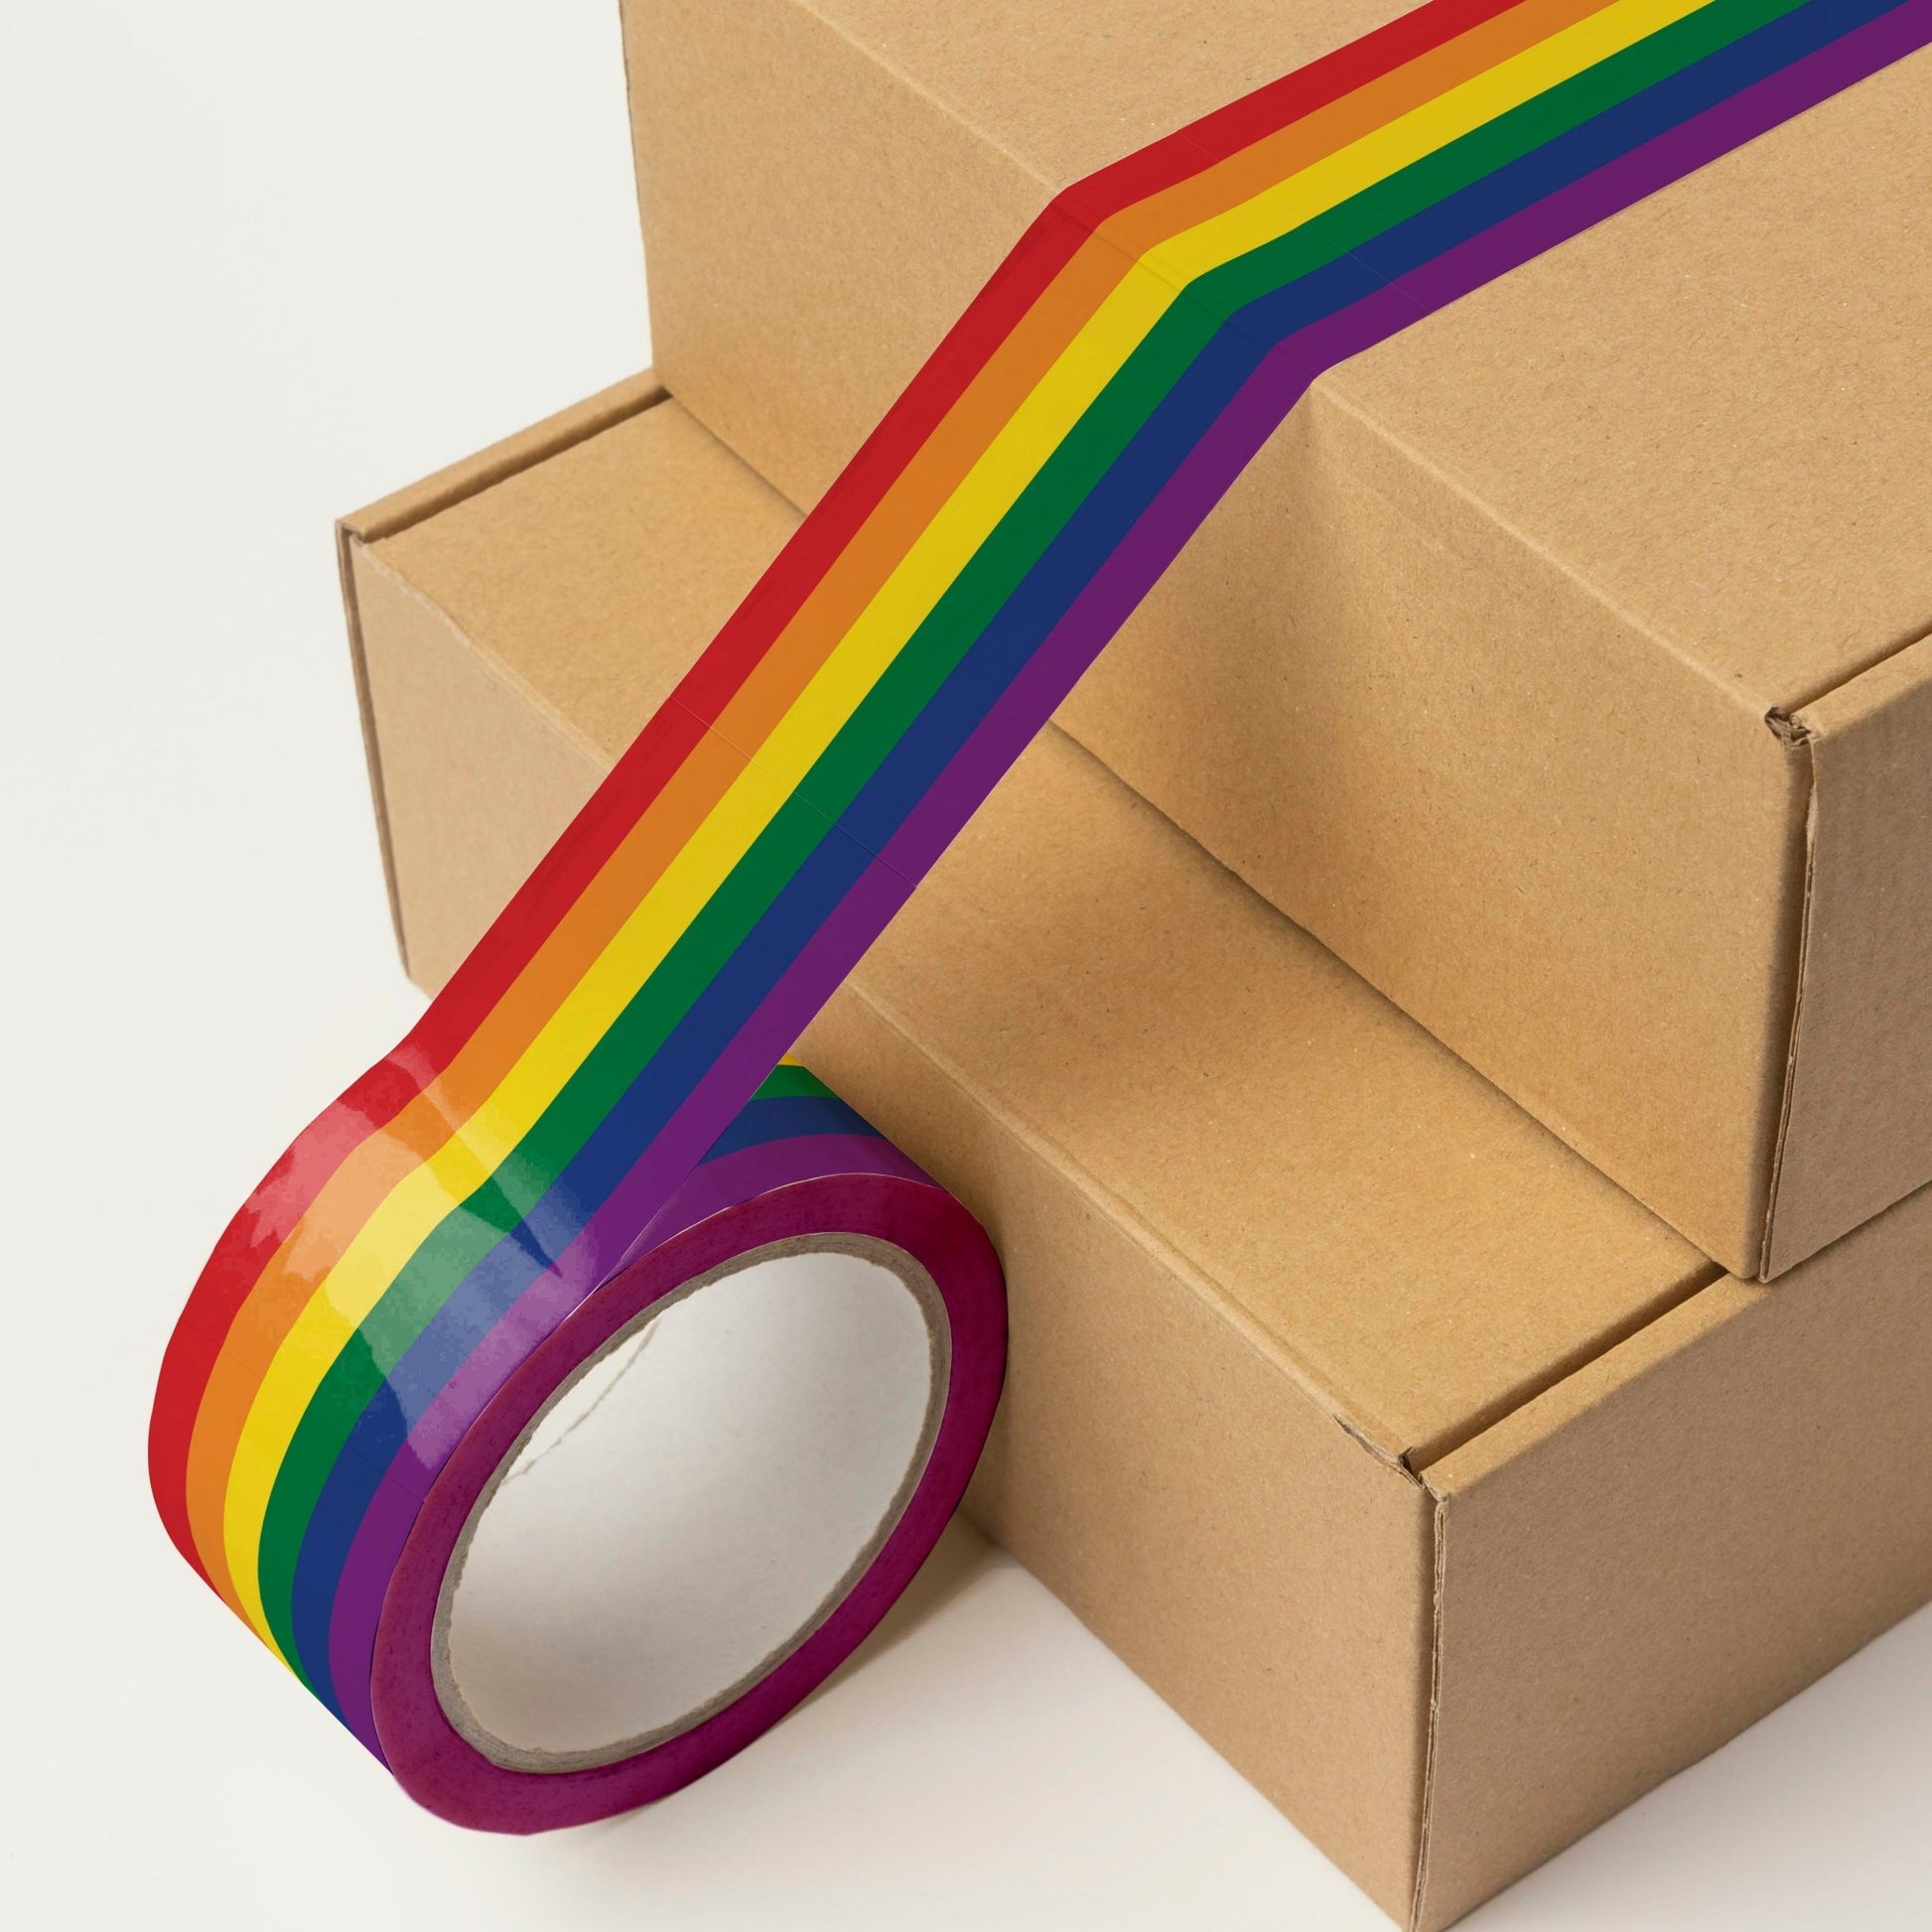 MT Washi Tape Rainbow Box